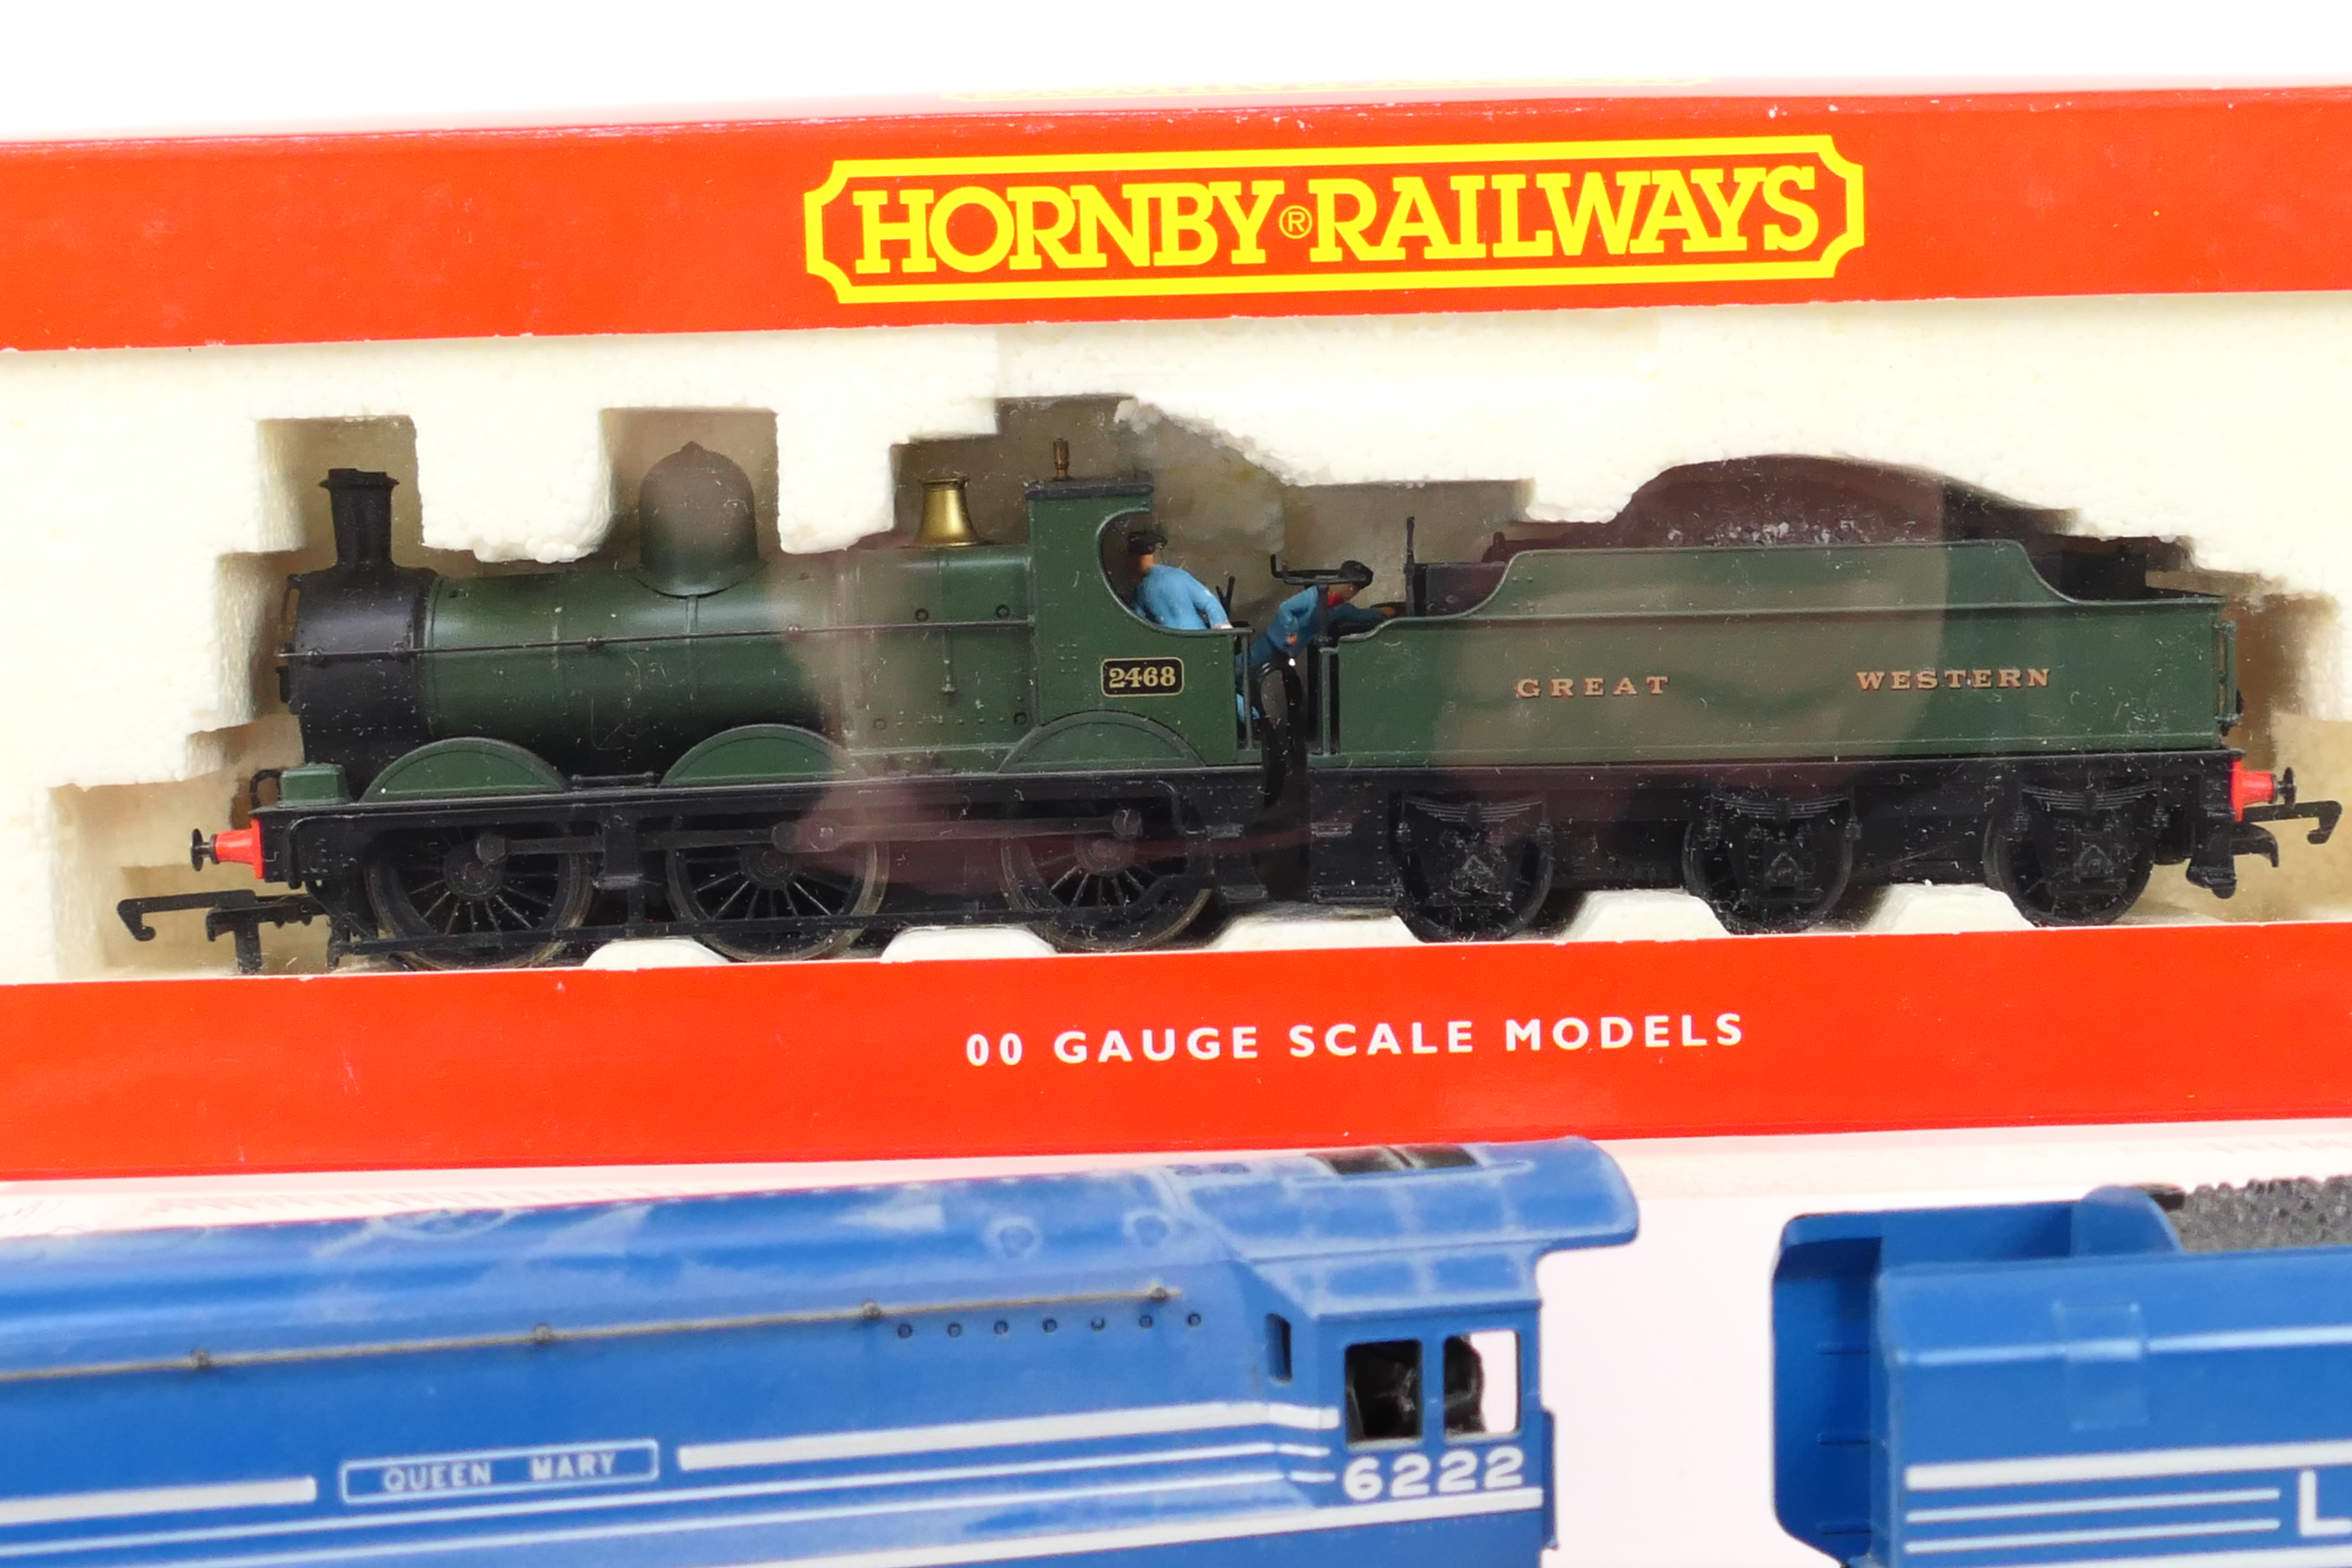 Hornby - Twbo boxed Hornby OO gauge steam locomotive and tenders. - Image 2 of 4